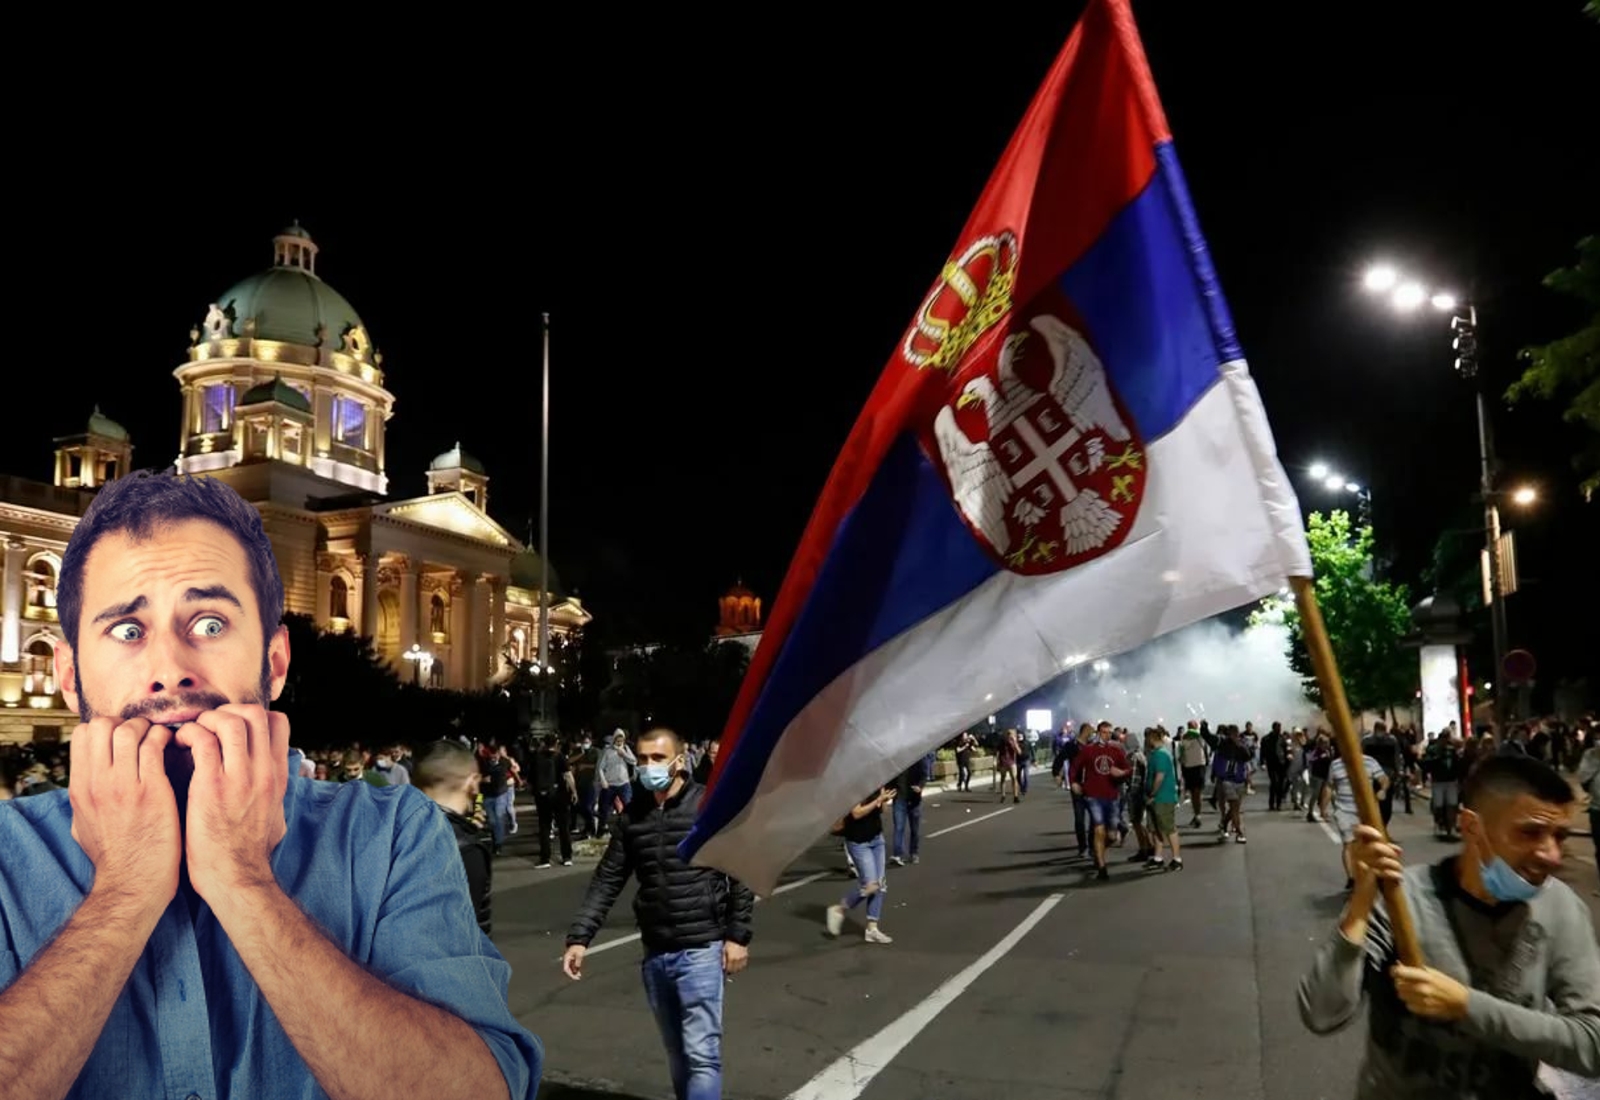 Жители Белграда возмущены активностью сбежавших в Сербию «российских либералов»